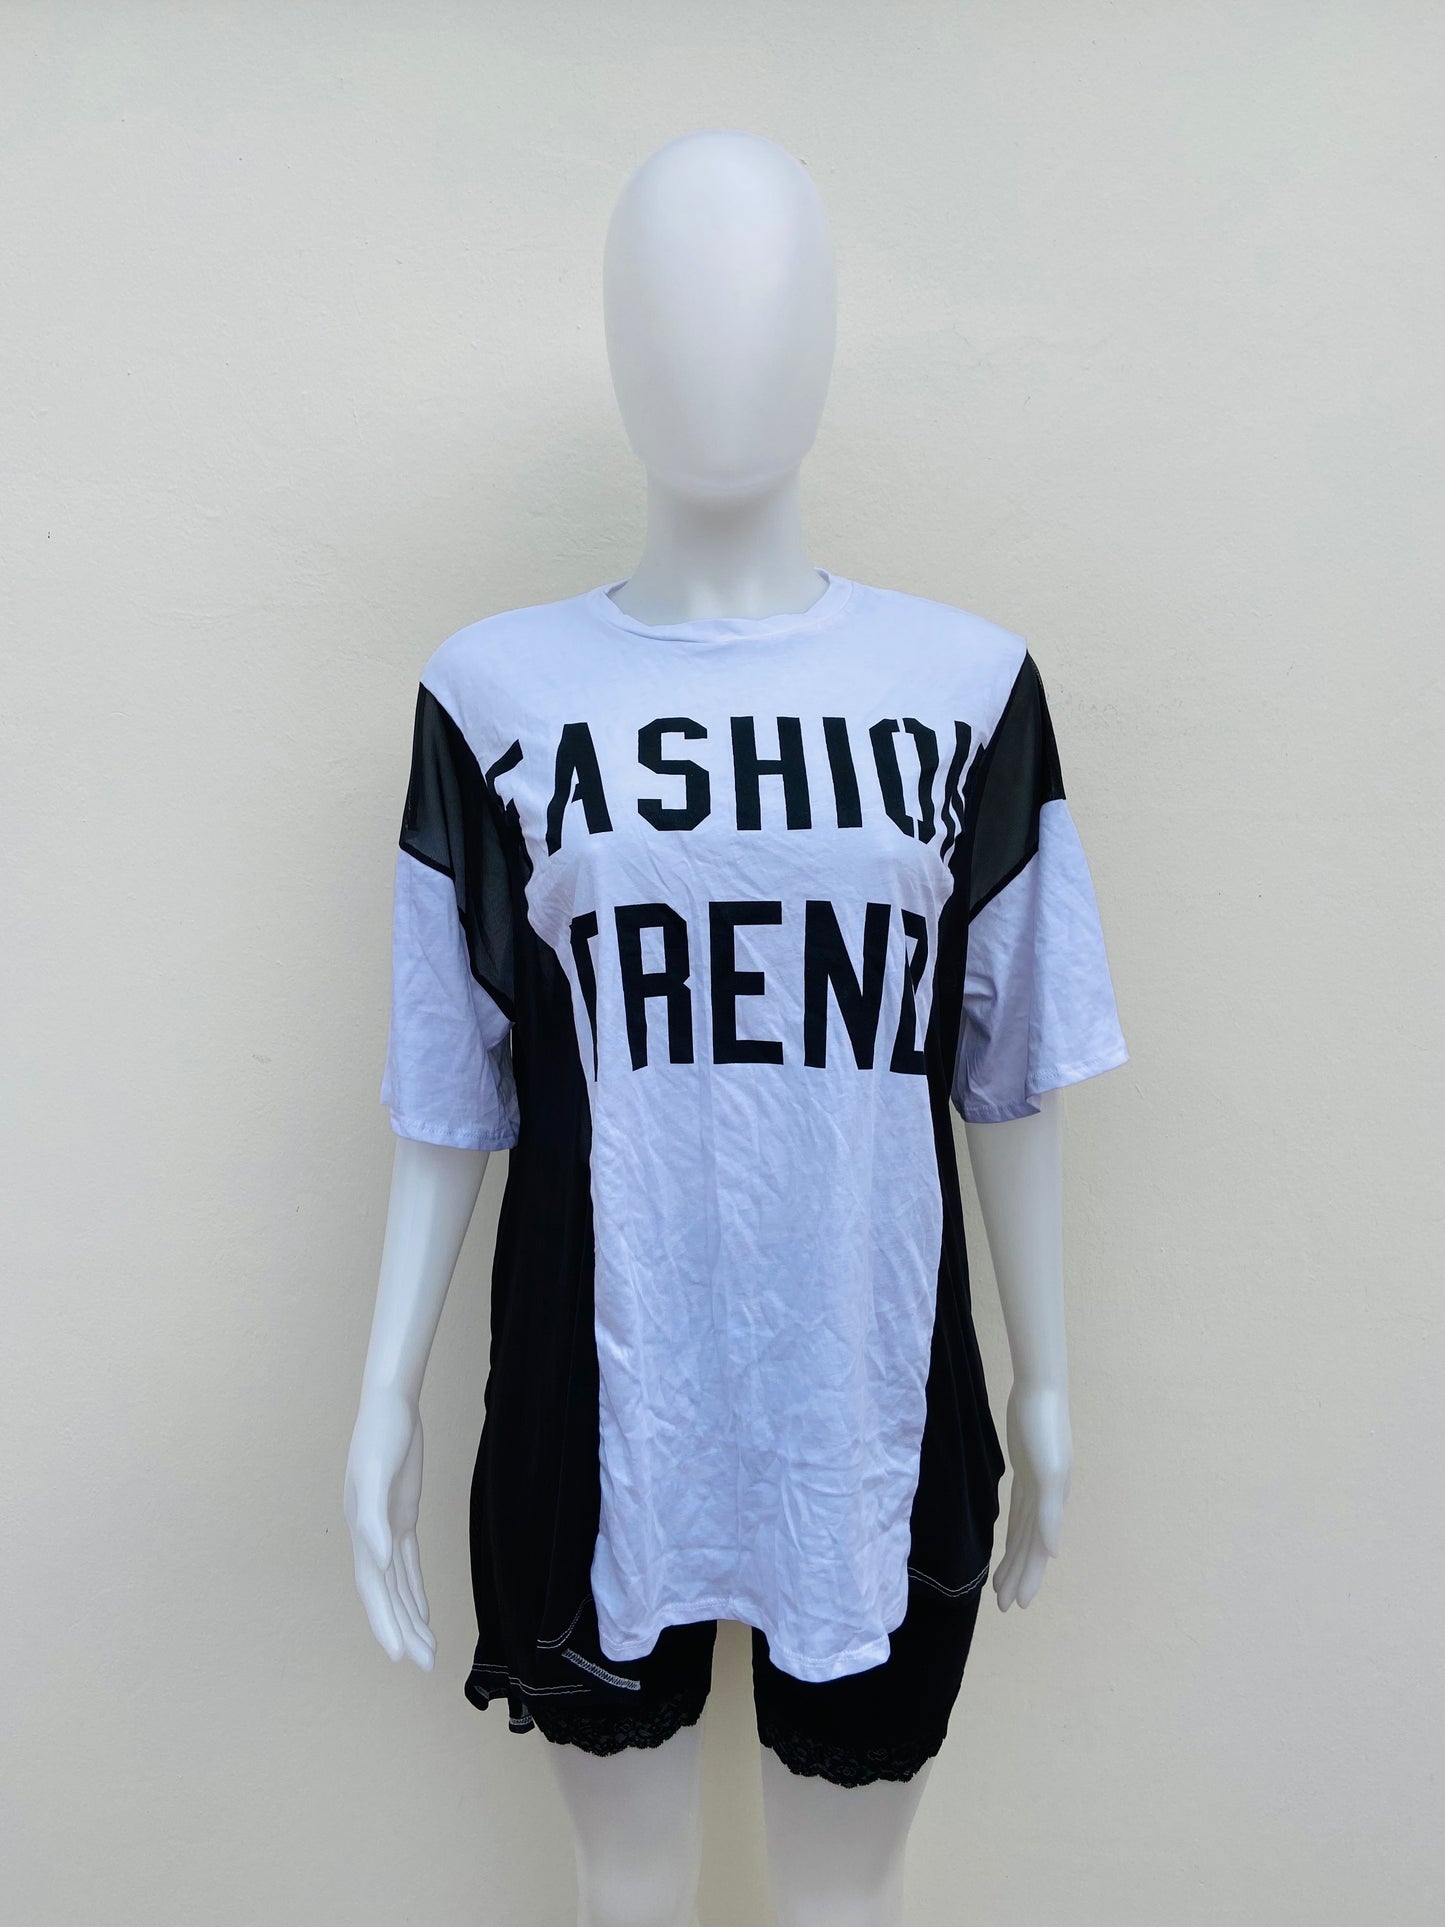 Top/ blusón Fashion Nova original blanco con negro y letras FASHION TREND ( tendencia de la moda )